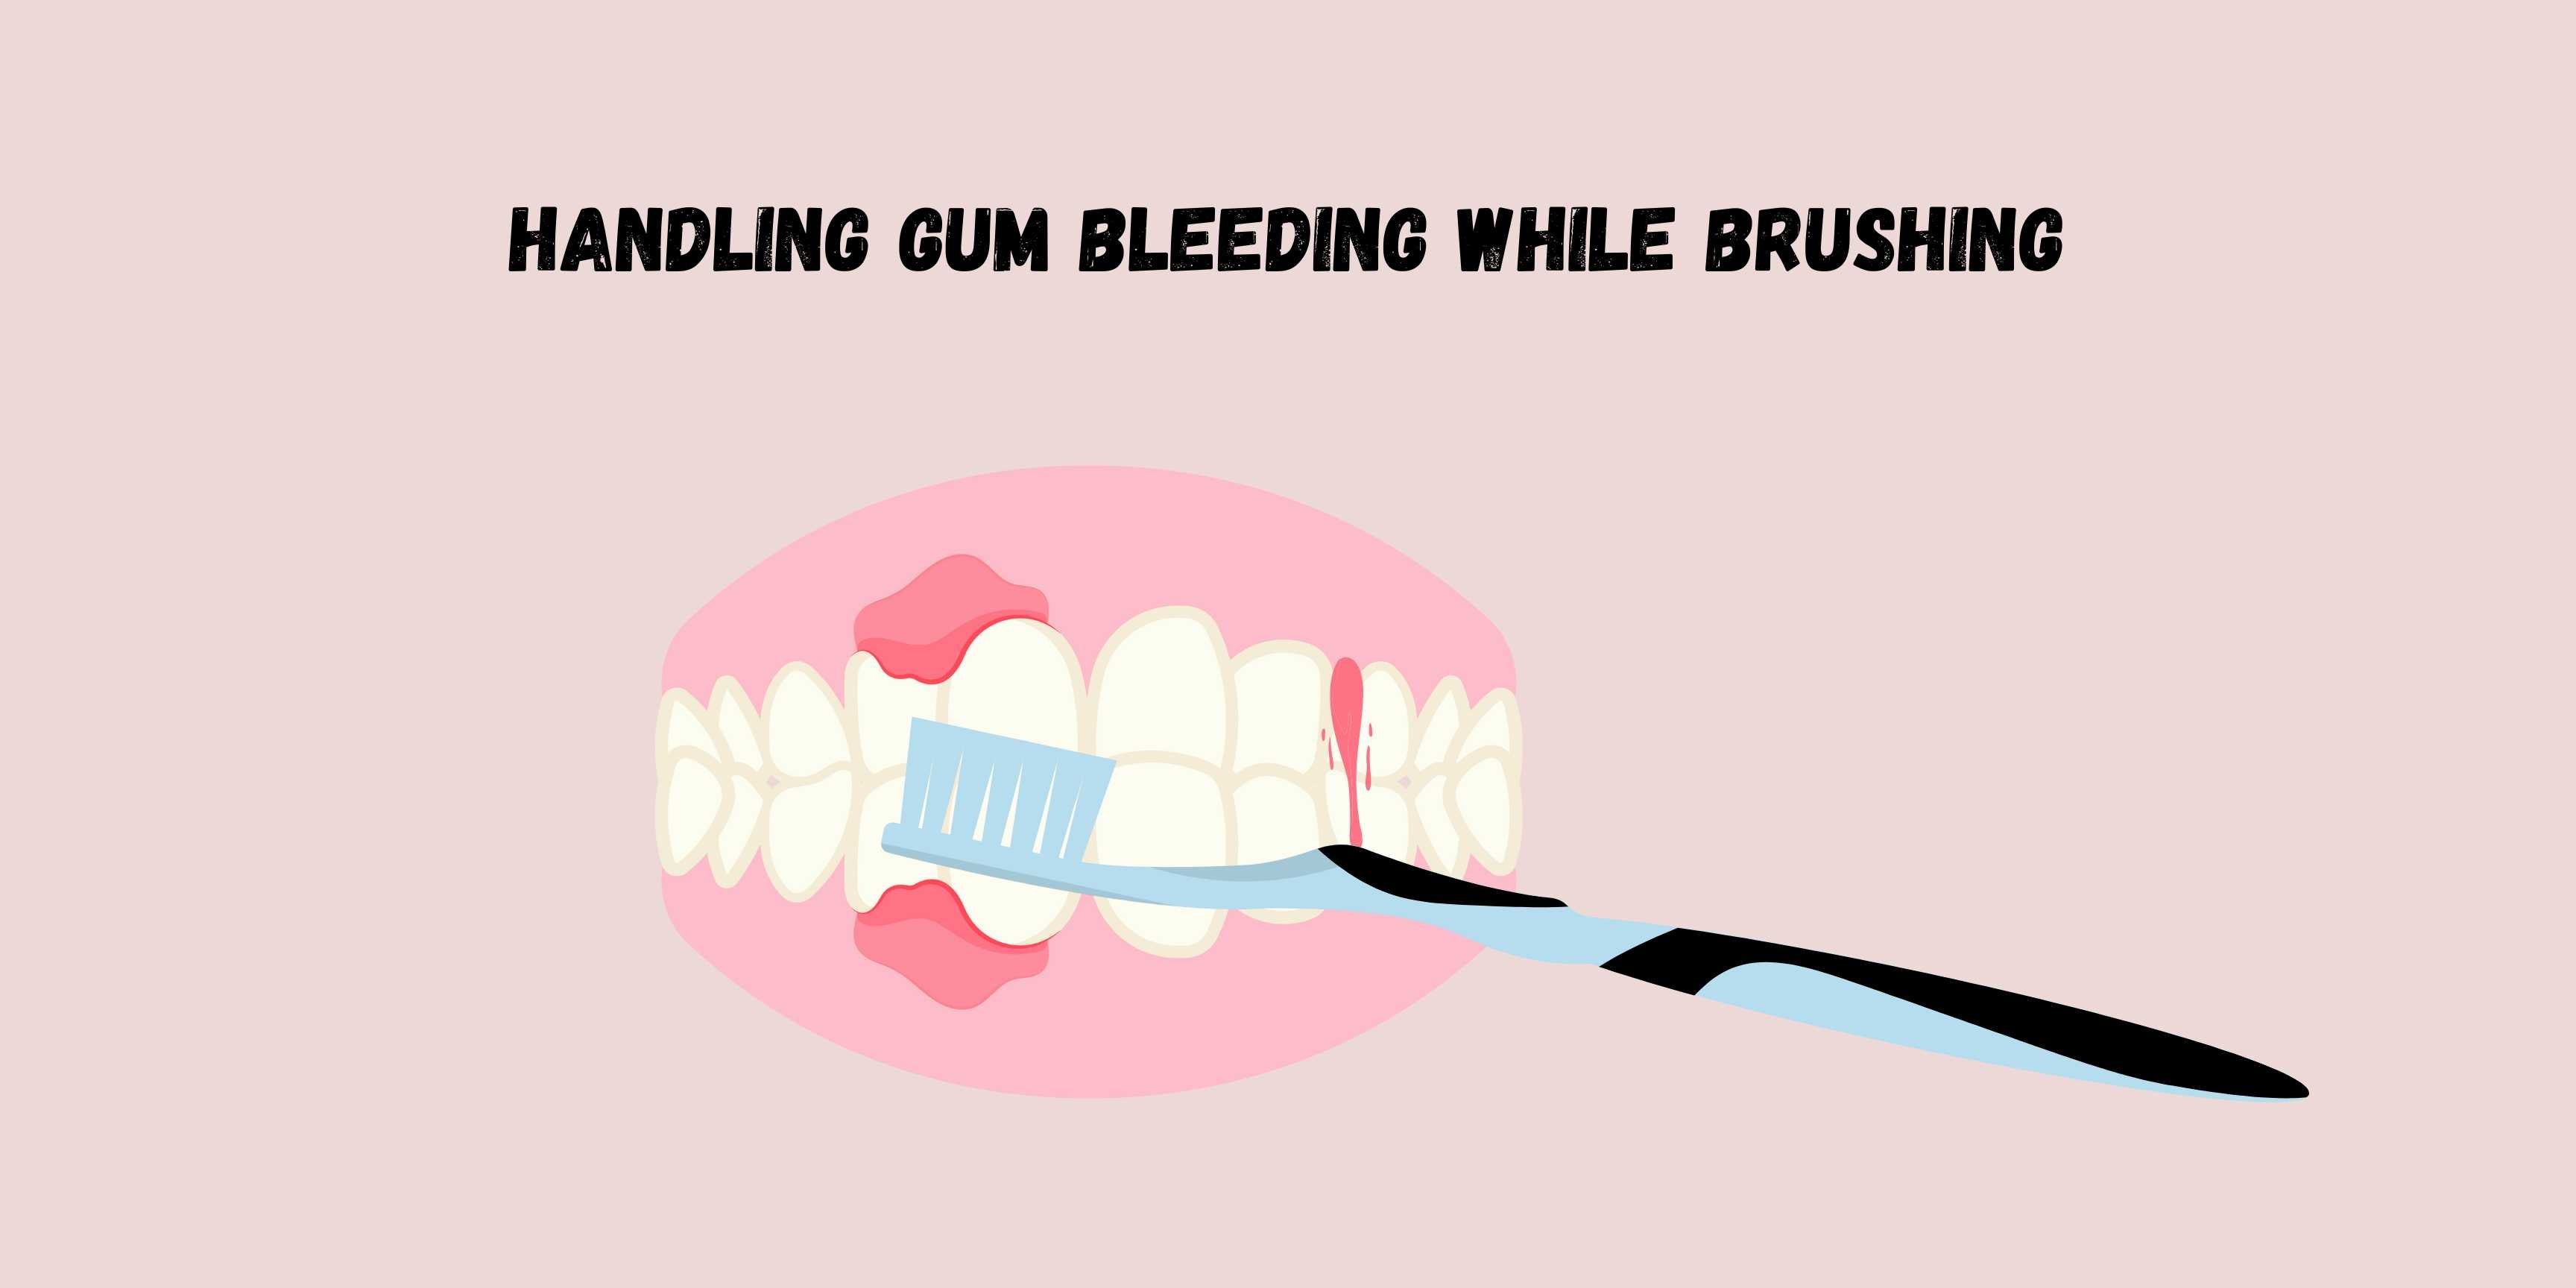 Handling Gum Bleeding While Brushing